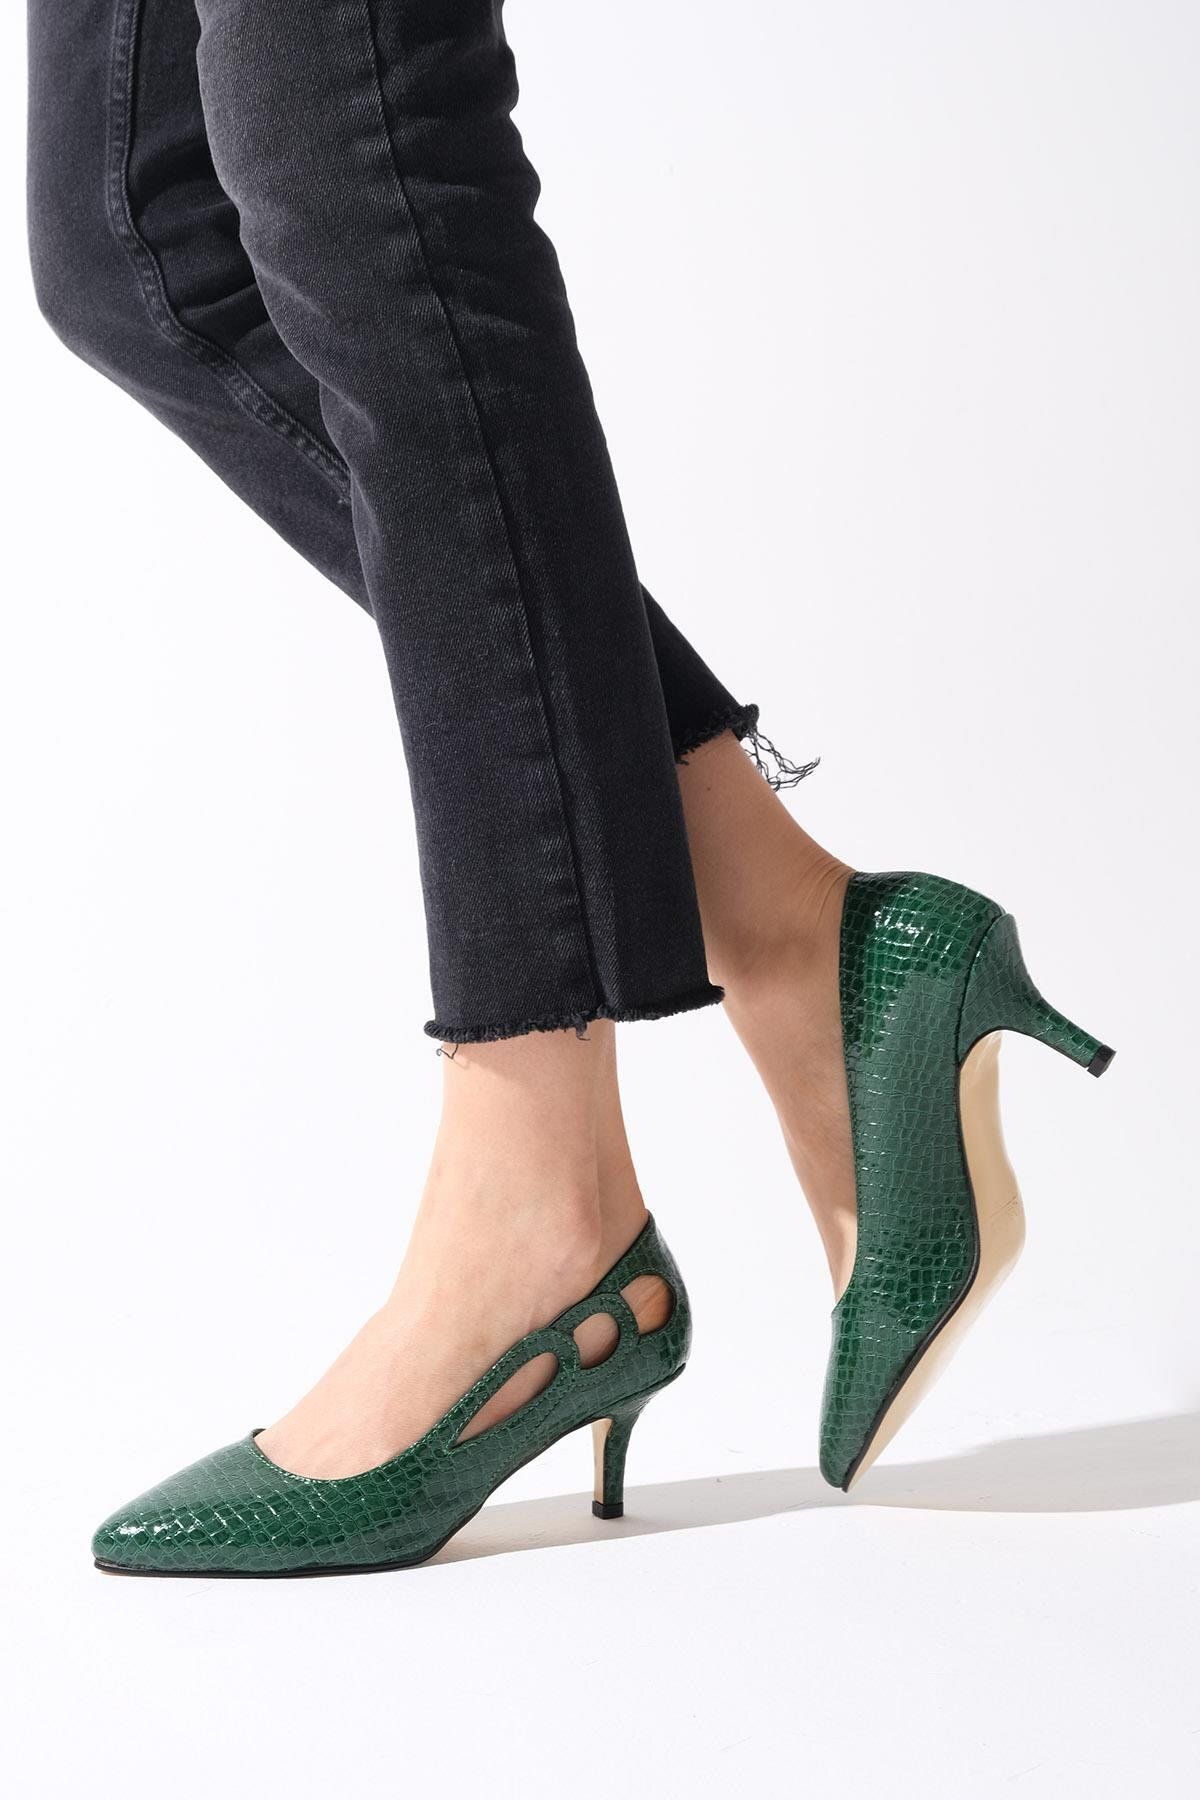 Mio Gusto Marion Yeşil Renk Kadın Kısa Topuklu Ayakkabı